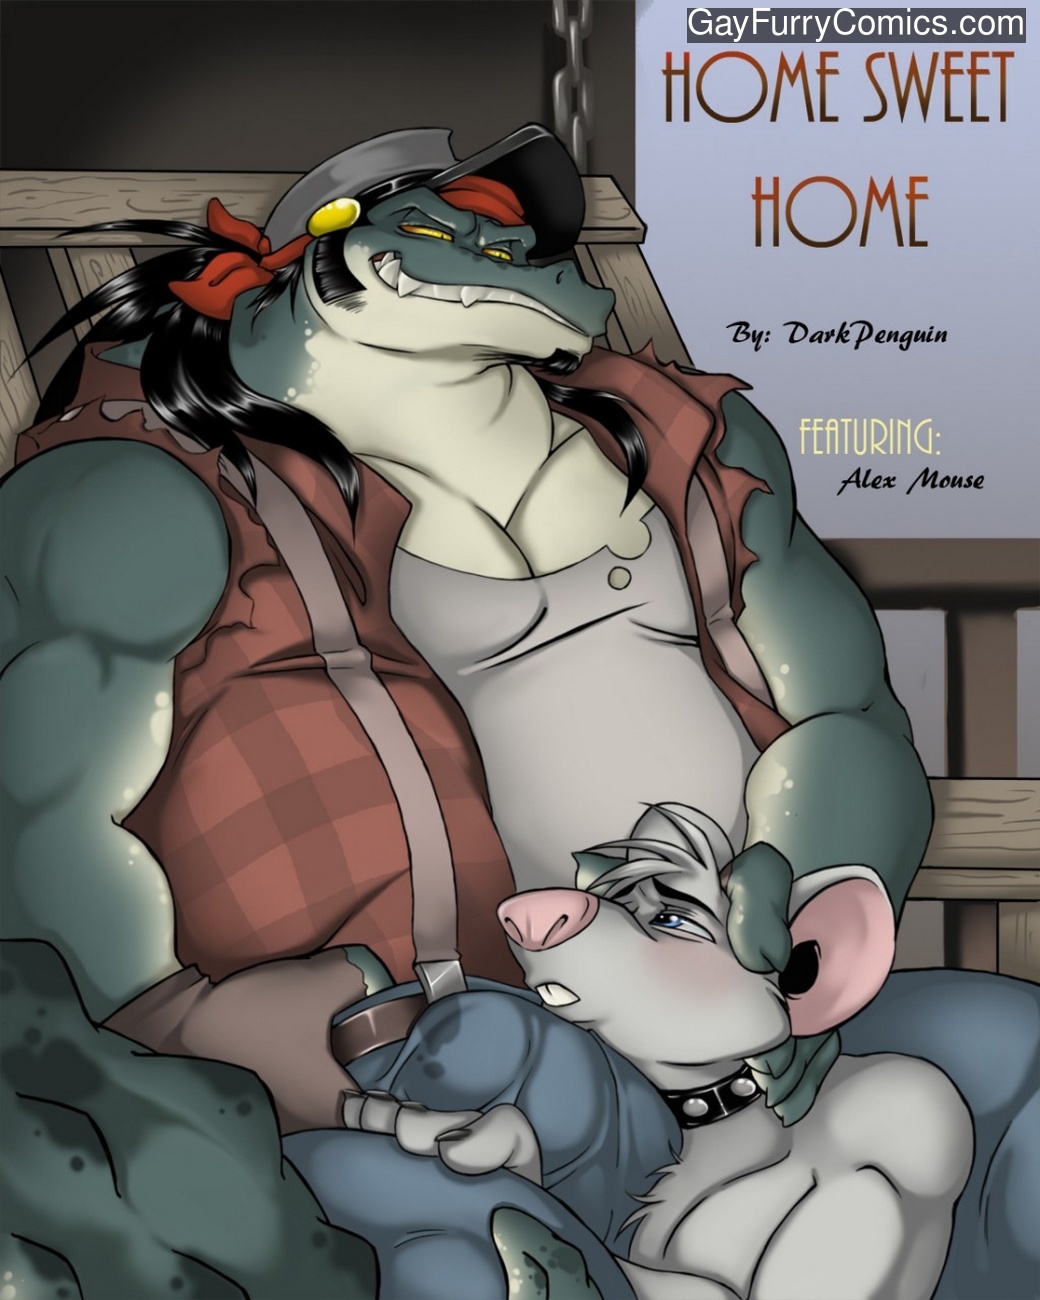 Sweet Furry Porn - Home Sweet Home gay furry comic - Gay Furry Comics